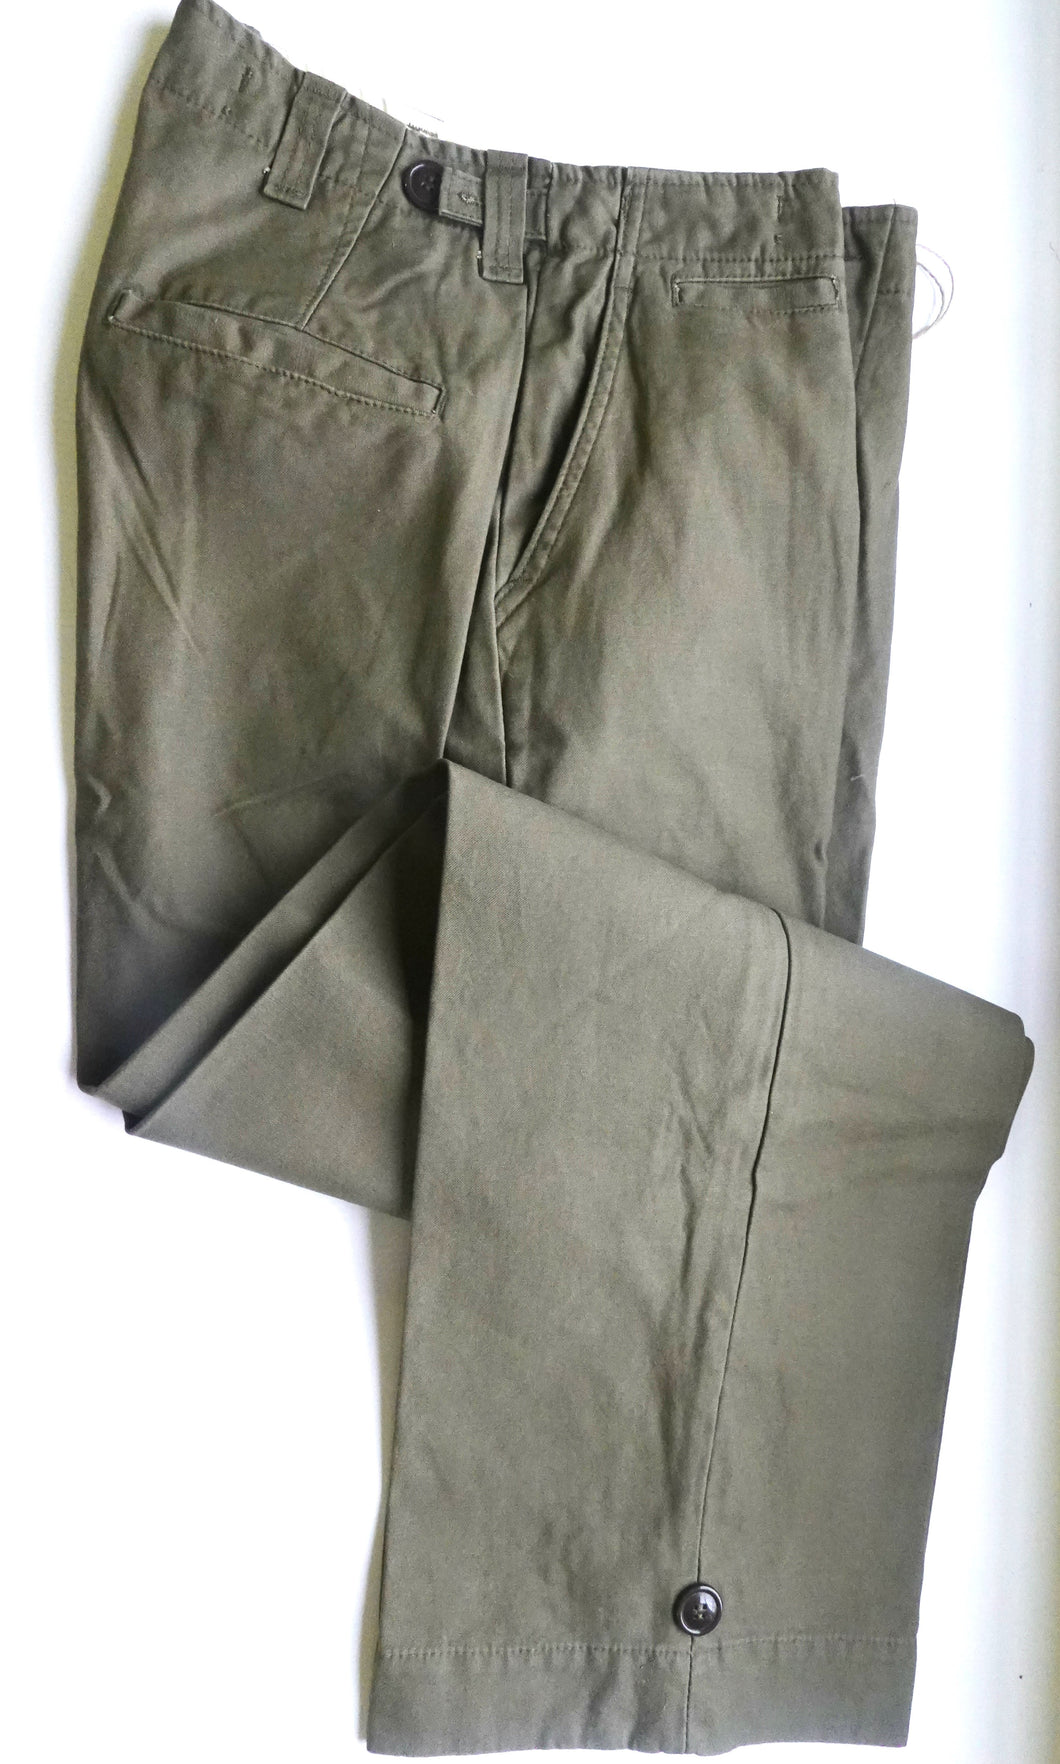 WW2 Riproduzione Pantalone Esercito Americano Mod 1943